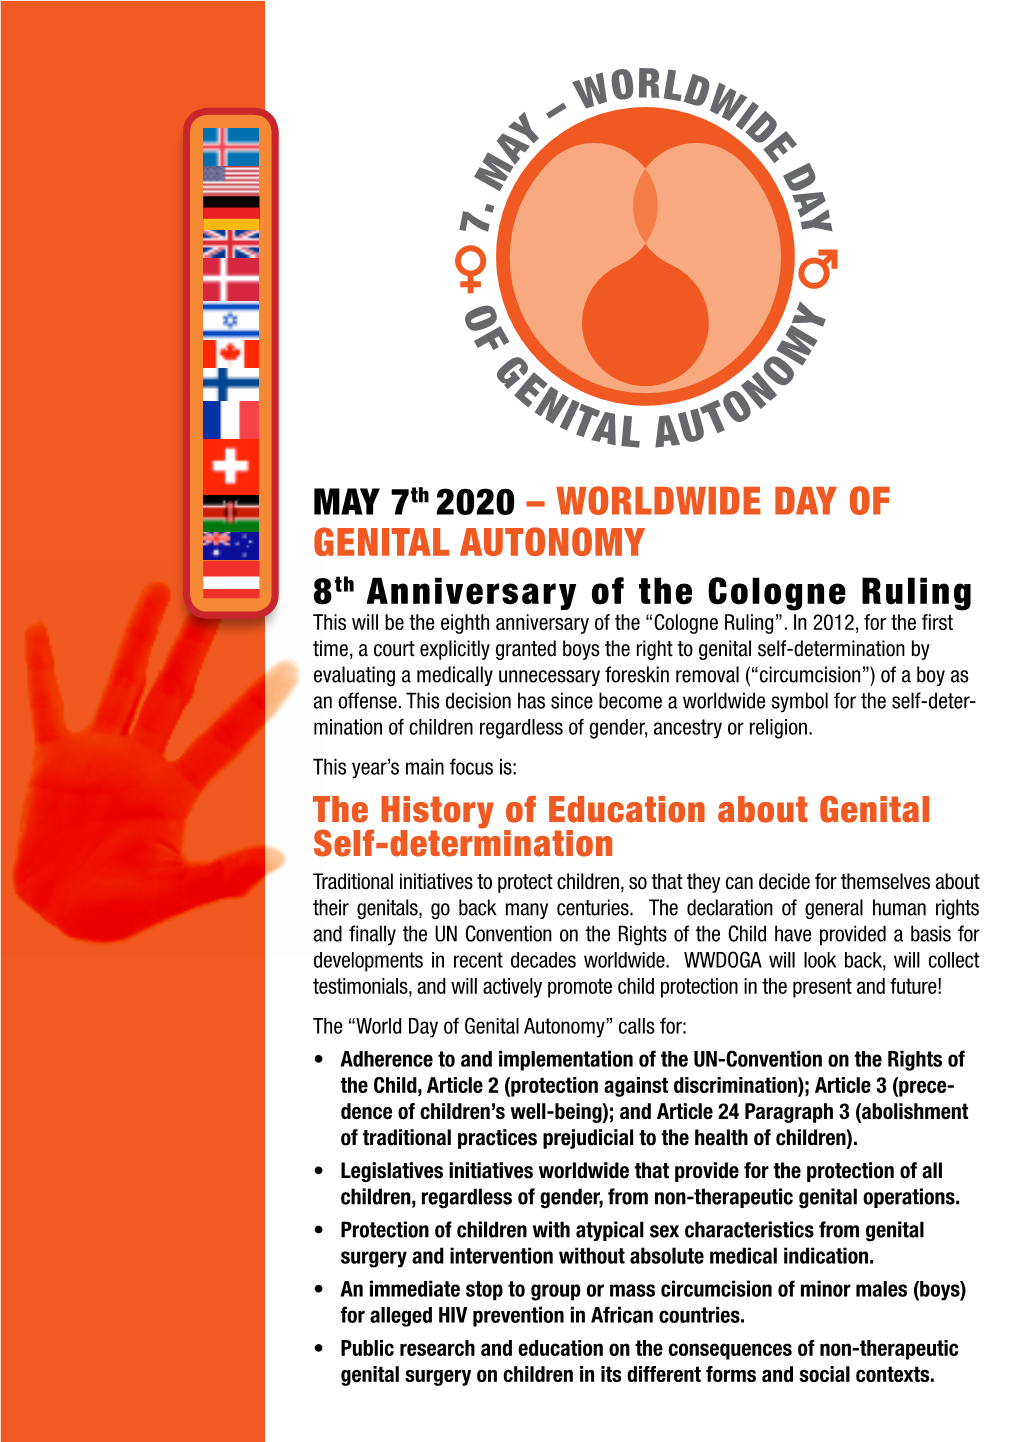 Worldwide Day of Genital Autonomy 2021